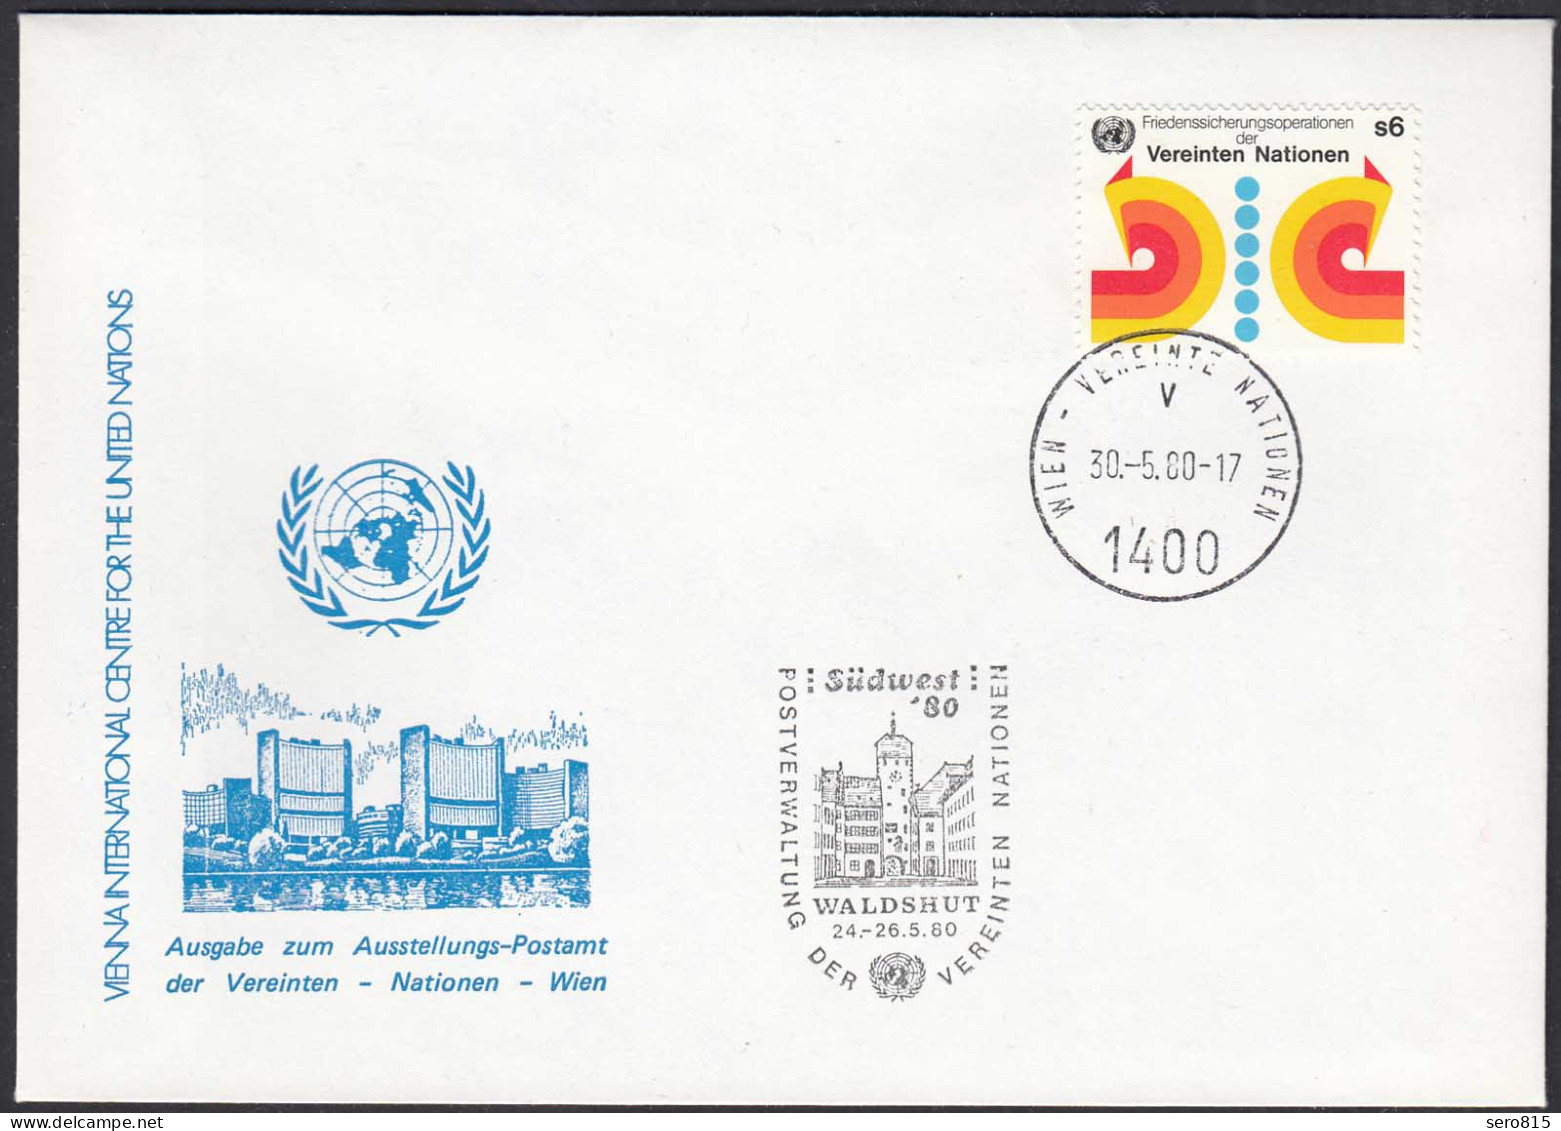 UNO WIEN VIENNA 1980 Waldshut Exhibition Cover 30.5 1980   (87128 - VN